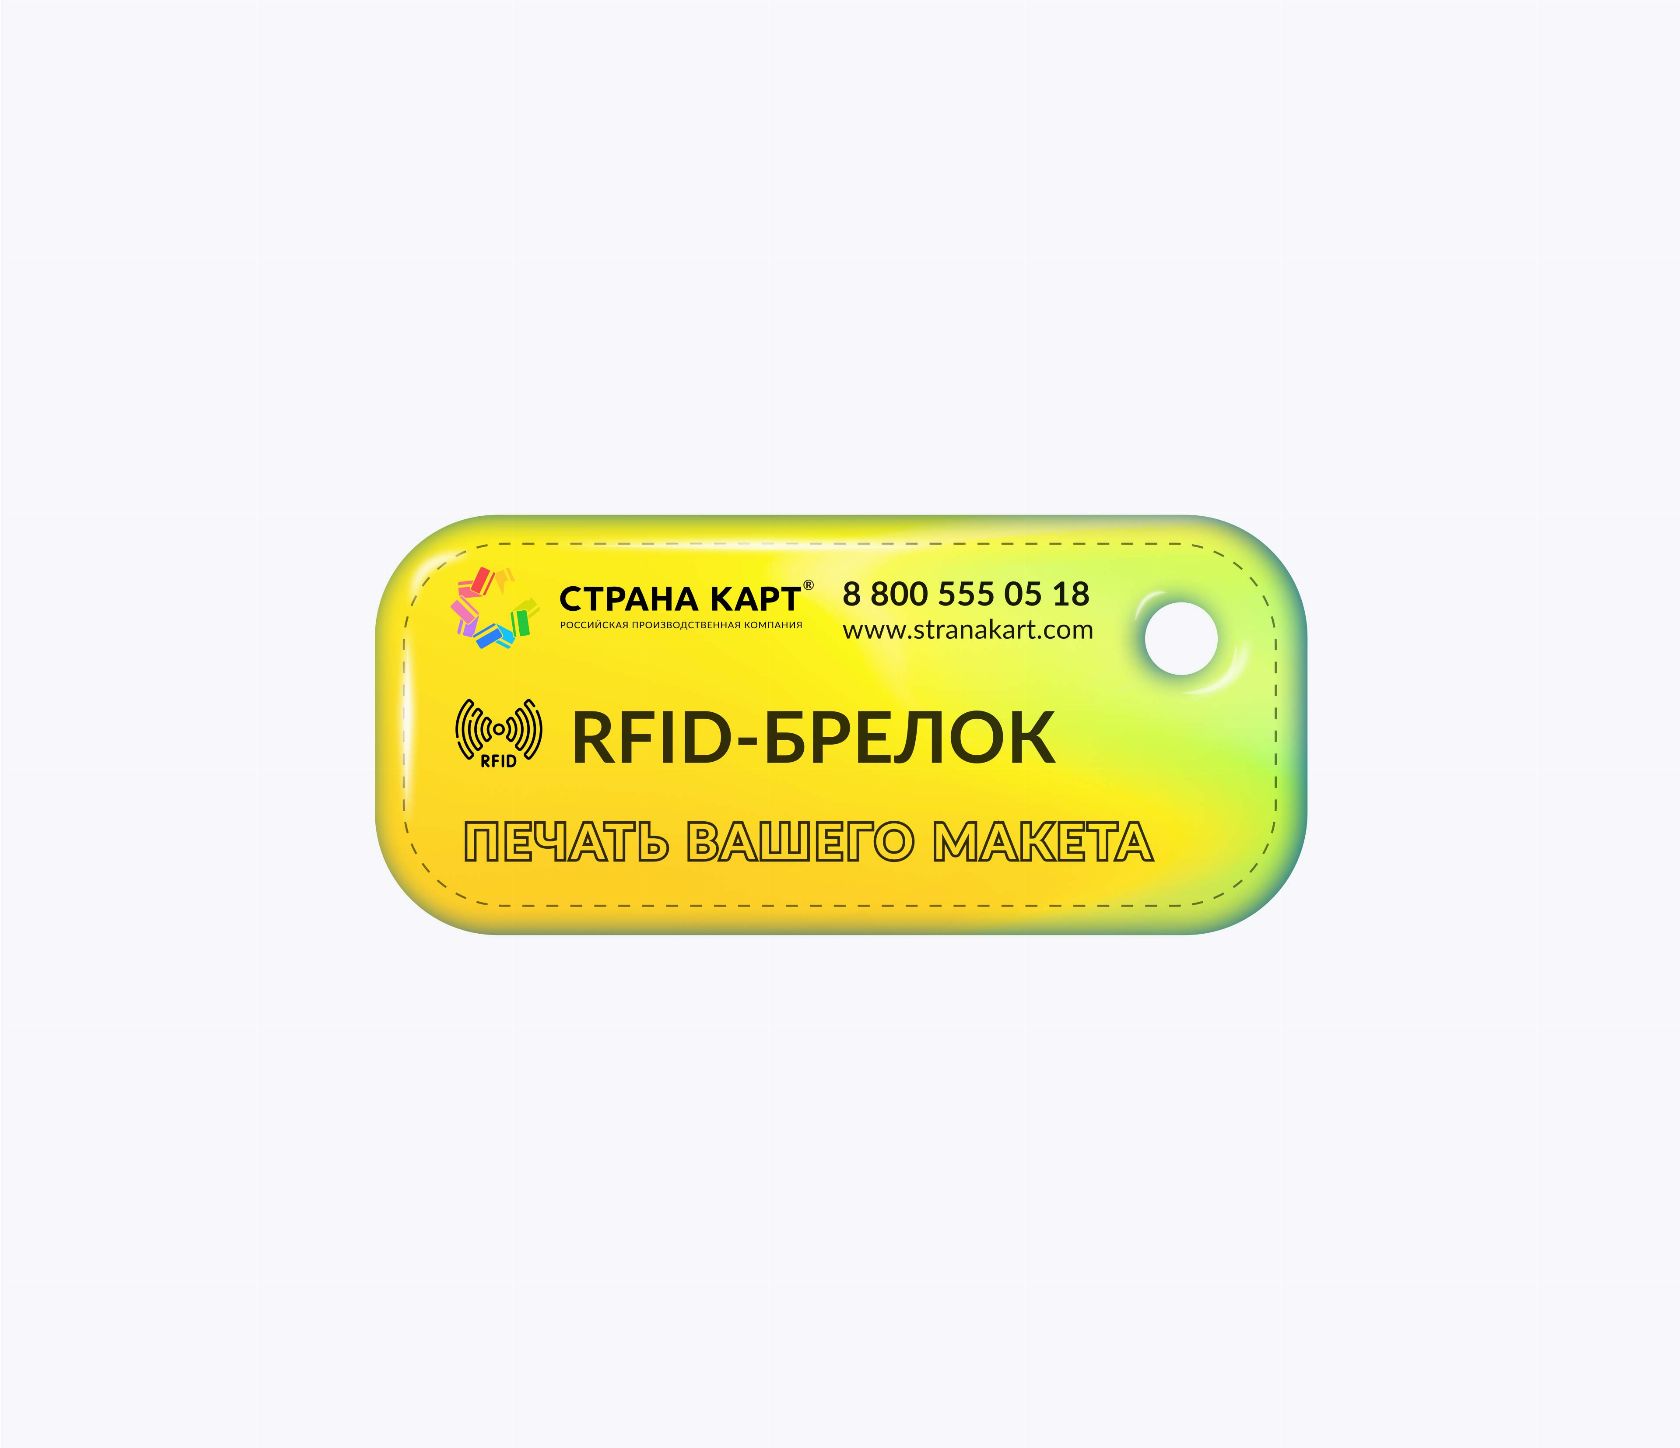 Мини прямоугольные RFID-брелоки NEOKEY® с чипом и вашим дизайном